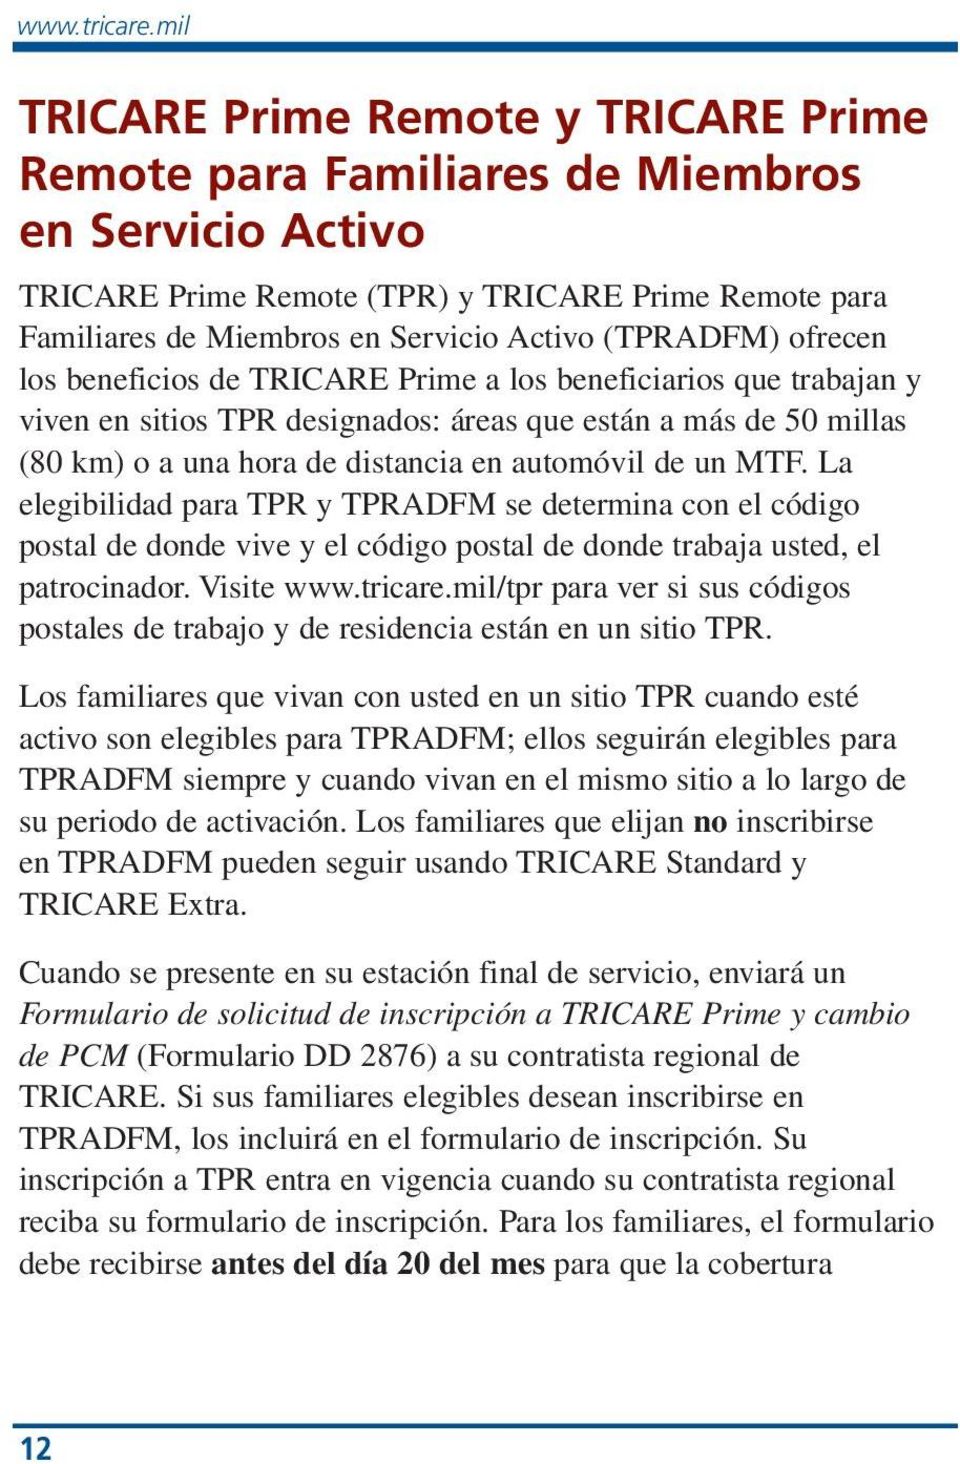 (TPRADFM) ofrecen los beneficios de TRICARE Prime a los beneficiarios que trabajan y viven en sitios TPR designados: áreas que están a más de 50 millas (80 km) o a una hora de distancia en automóvil